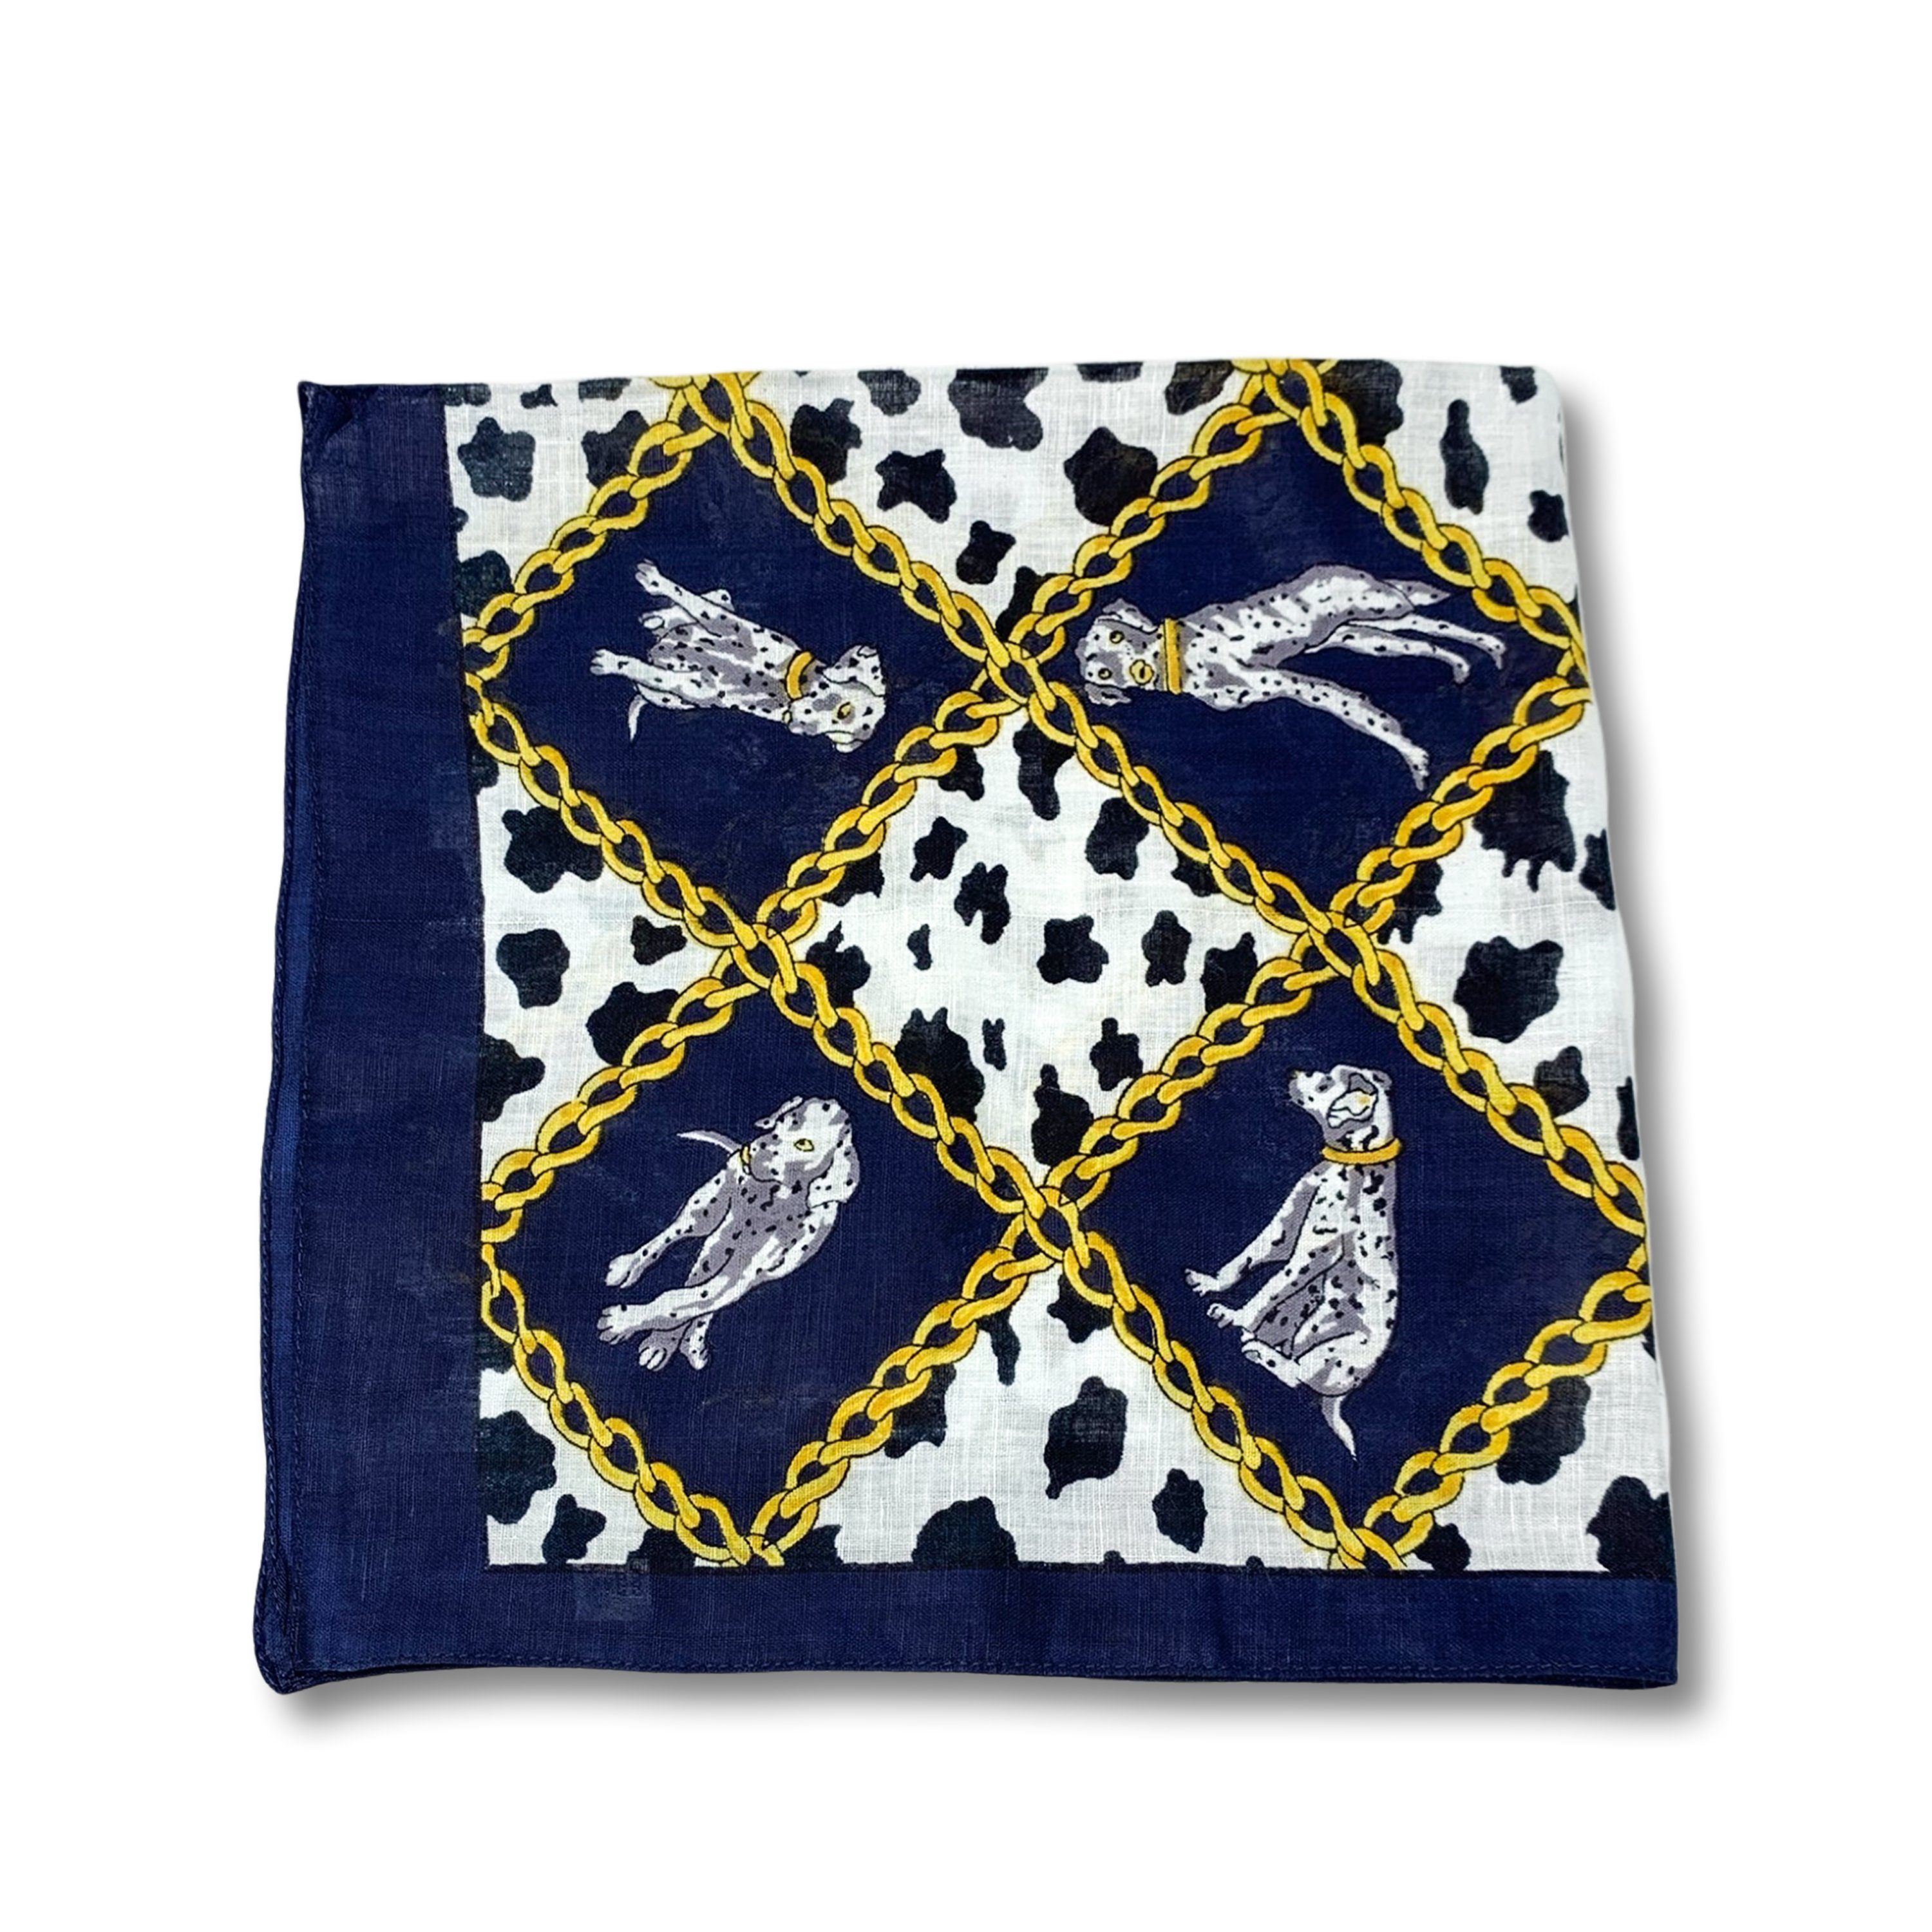 Friseurmeister Halstuch Schal Basic 50cm x 50cm - leichte tücher scarf halstücher halsband Blau Weiß Gold